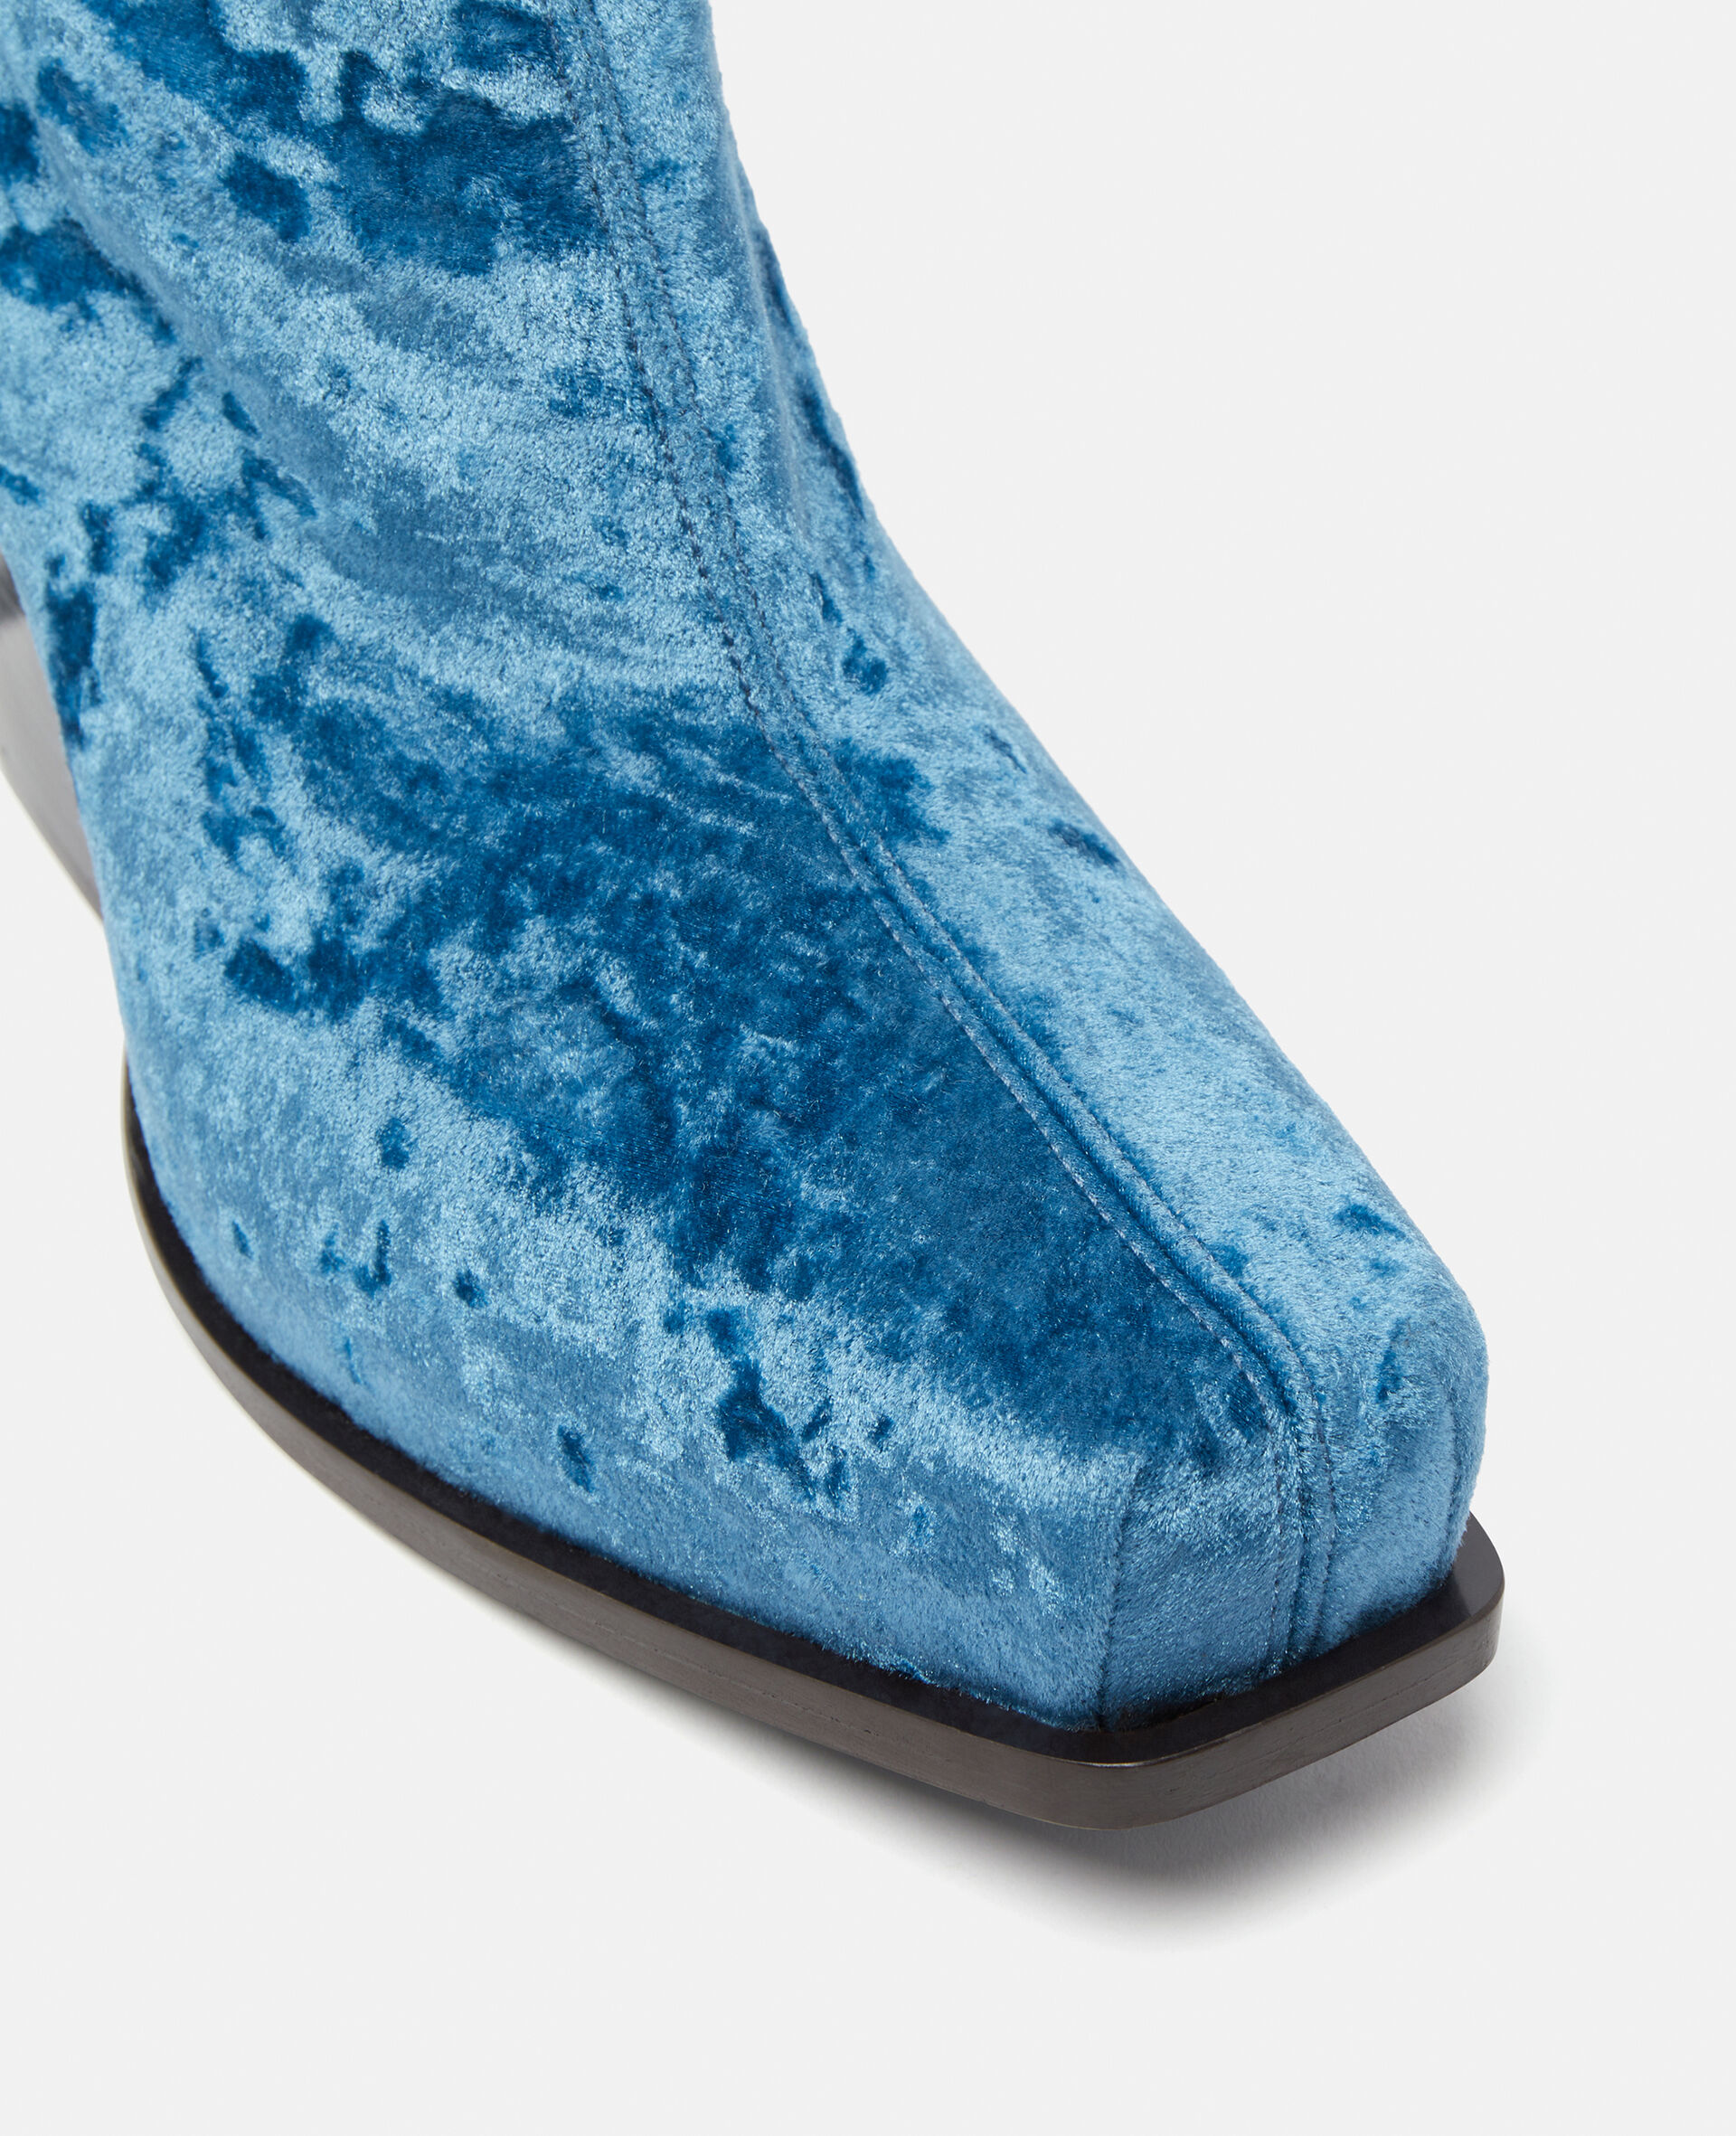 Cowboy Crushed Velvet Ankle Boots-Blue-large image number 4